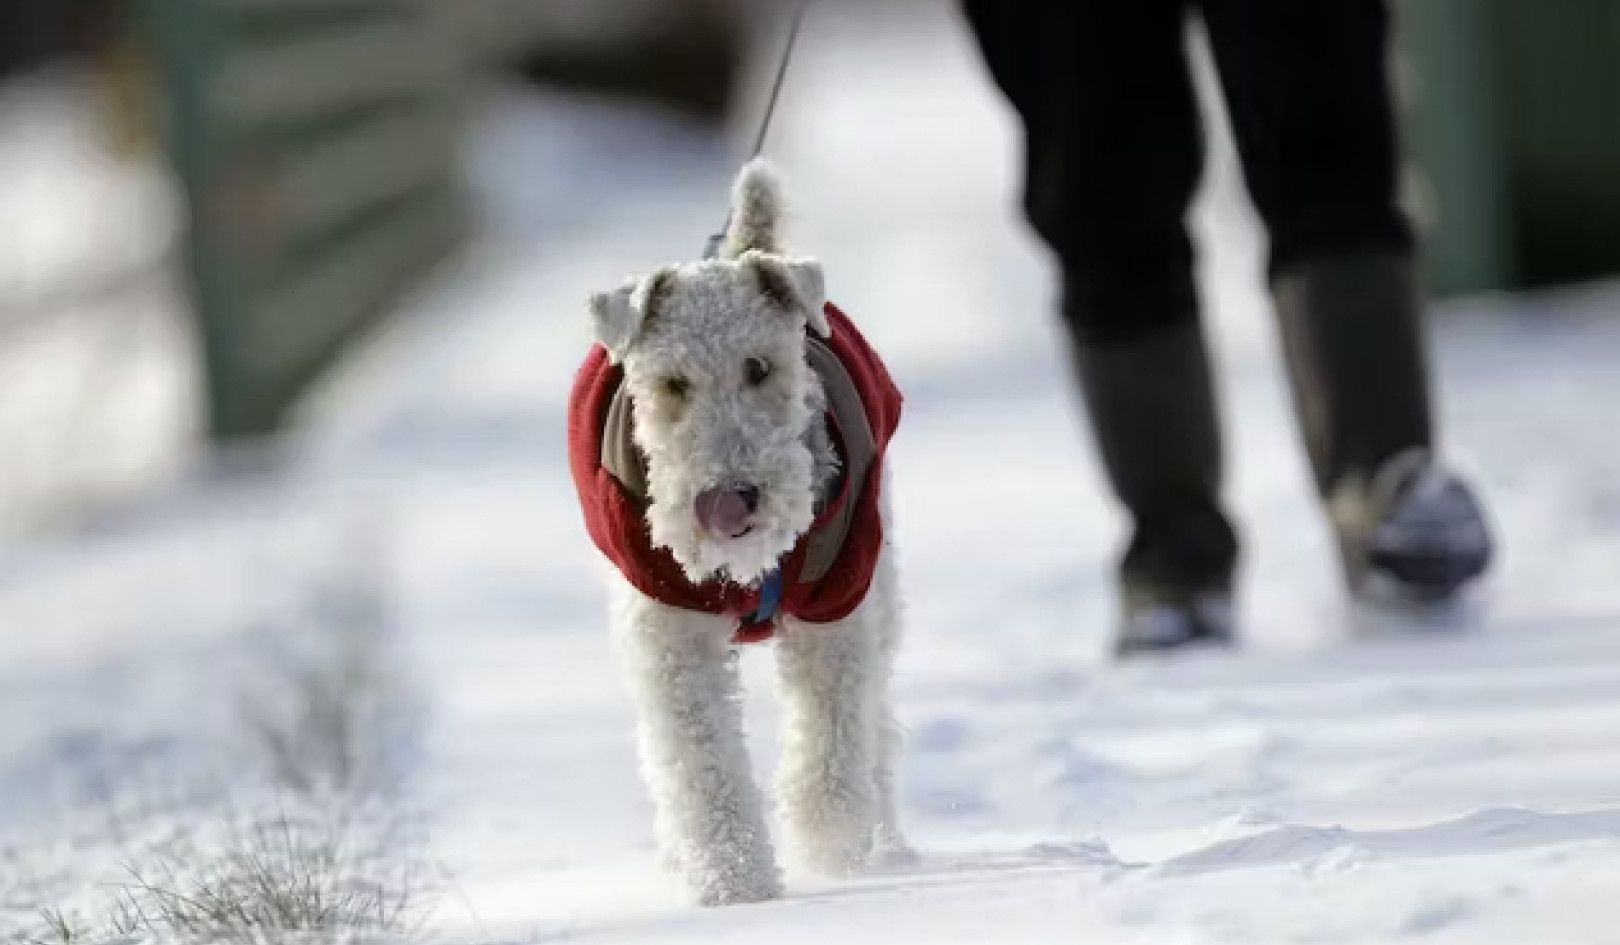 العناية بالكلاب في الشتاء: نصائح للحفاظ على دفء وأمان حيوانك الأليف